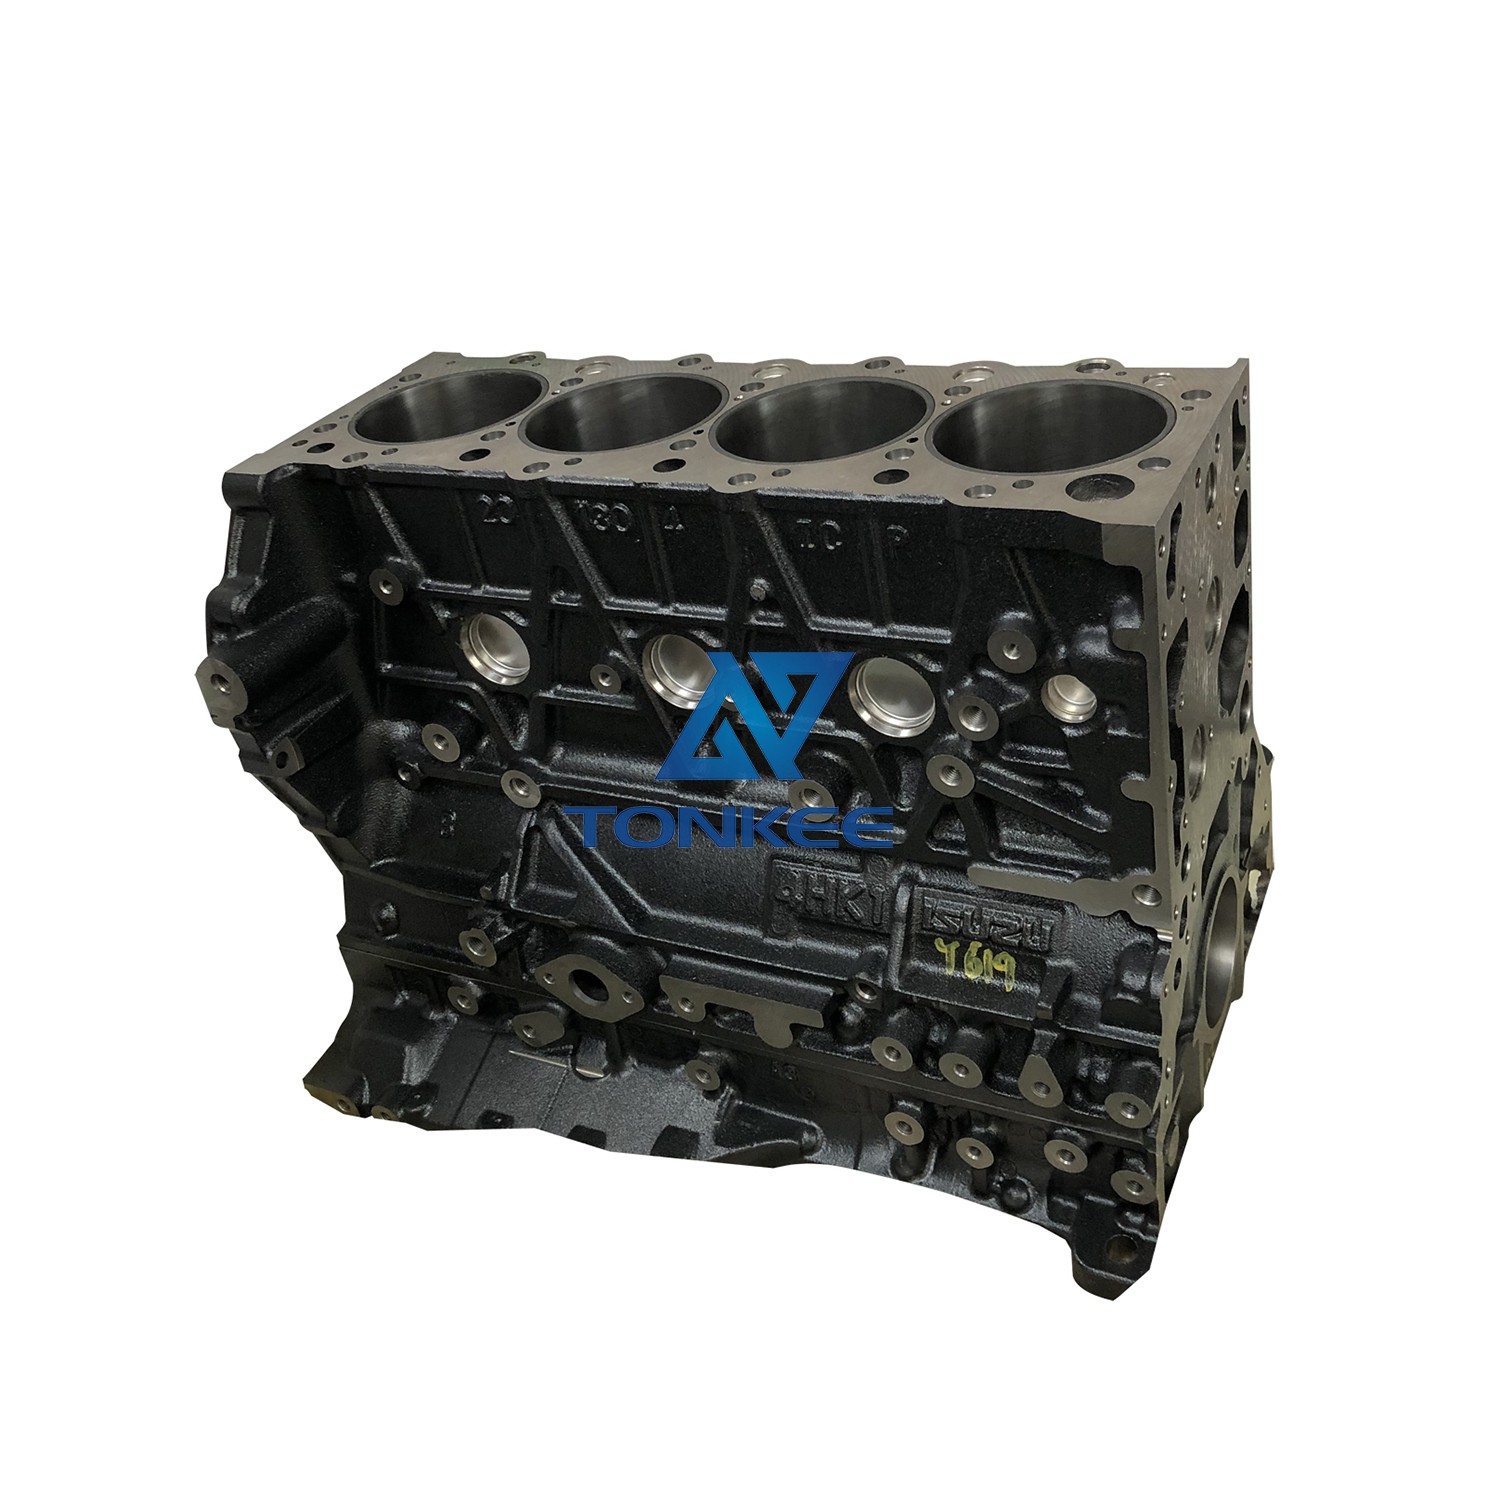 8-98005443-0 8-98204528-0 8-98046721-0 diesel engine block ZX200-3 